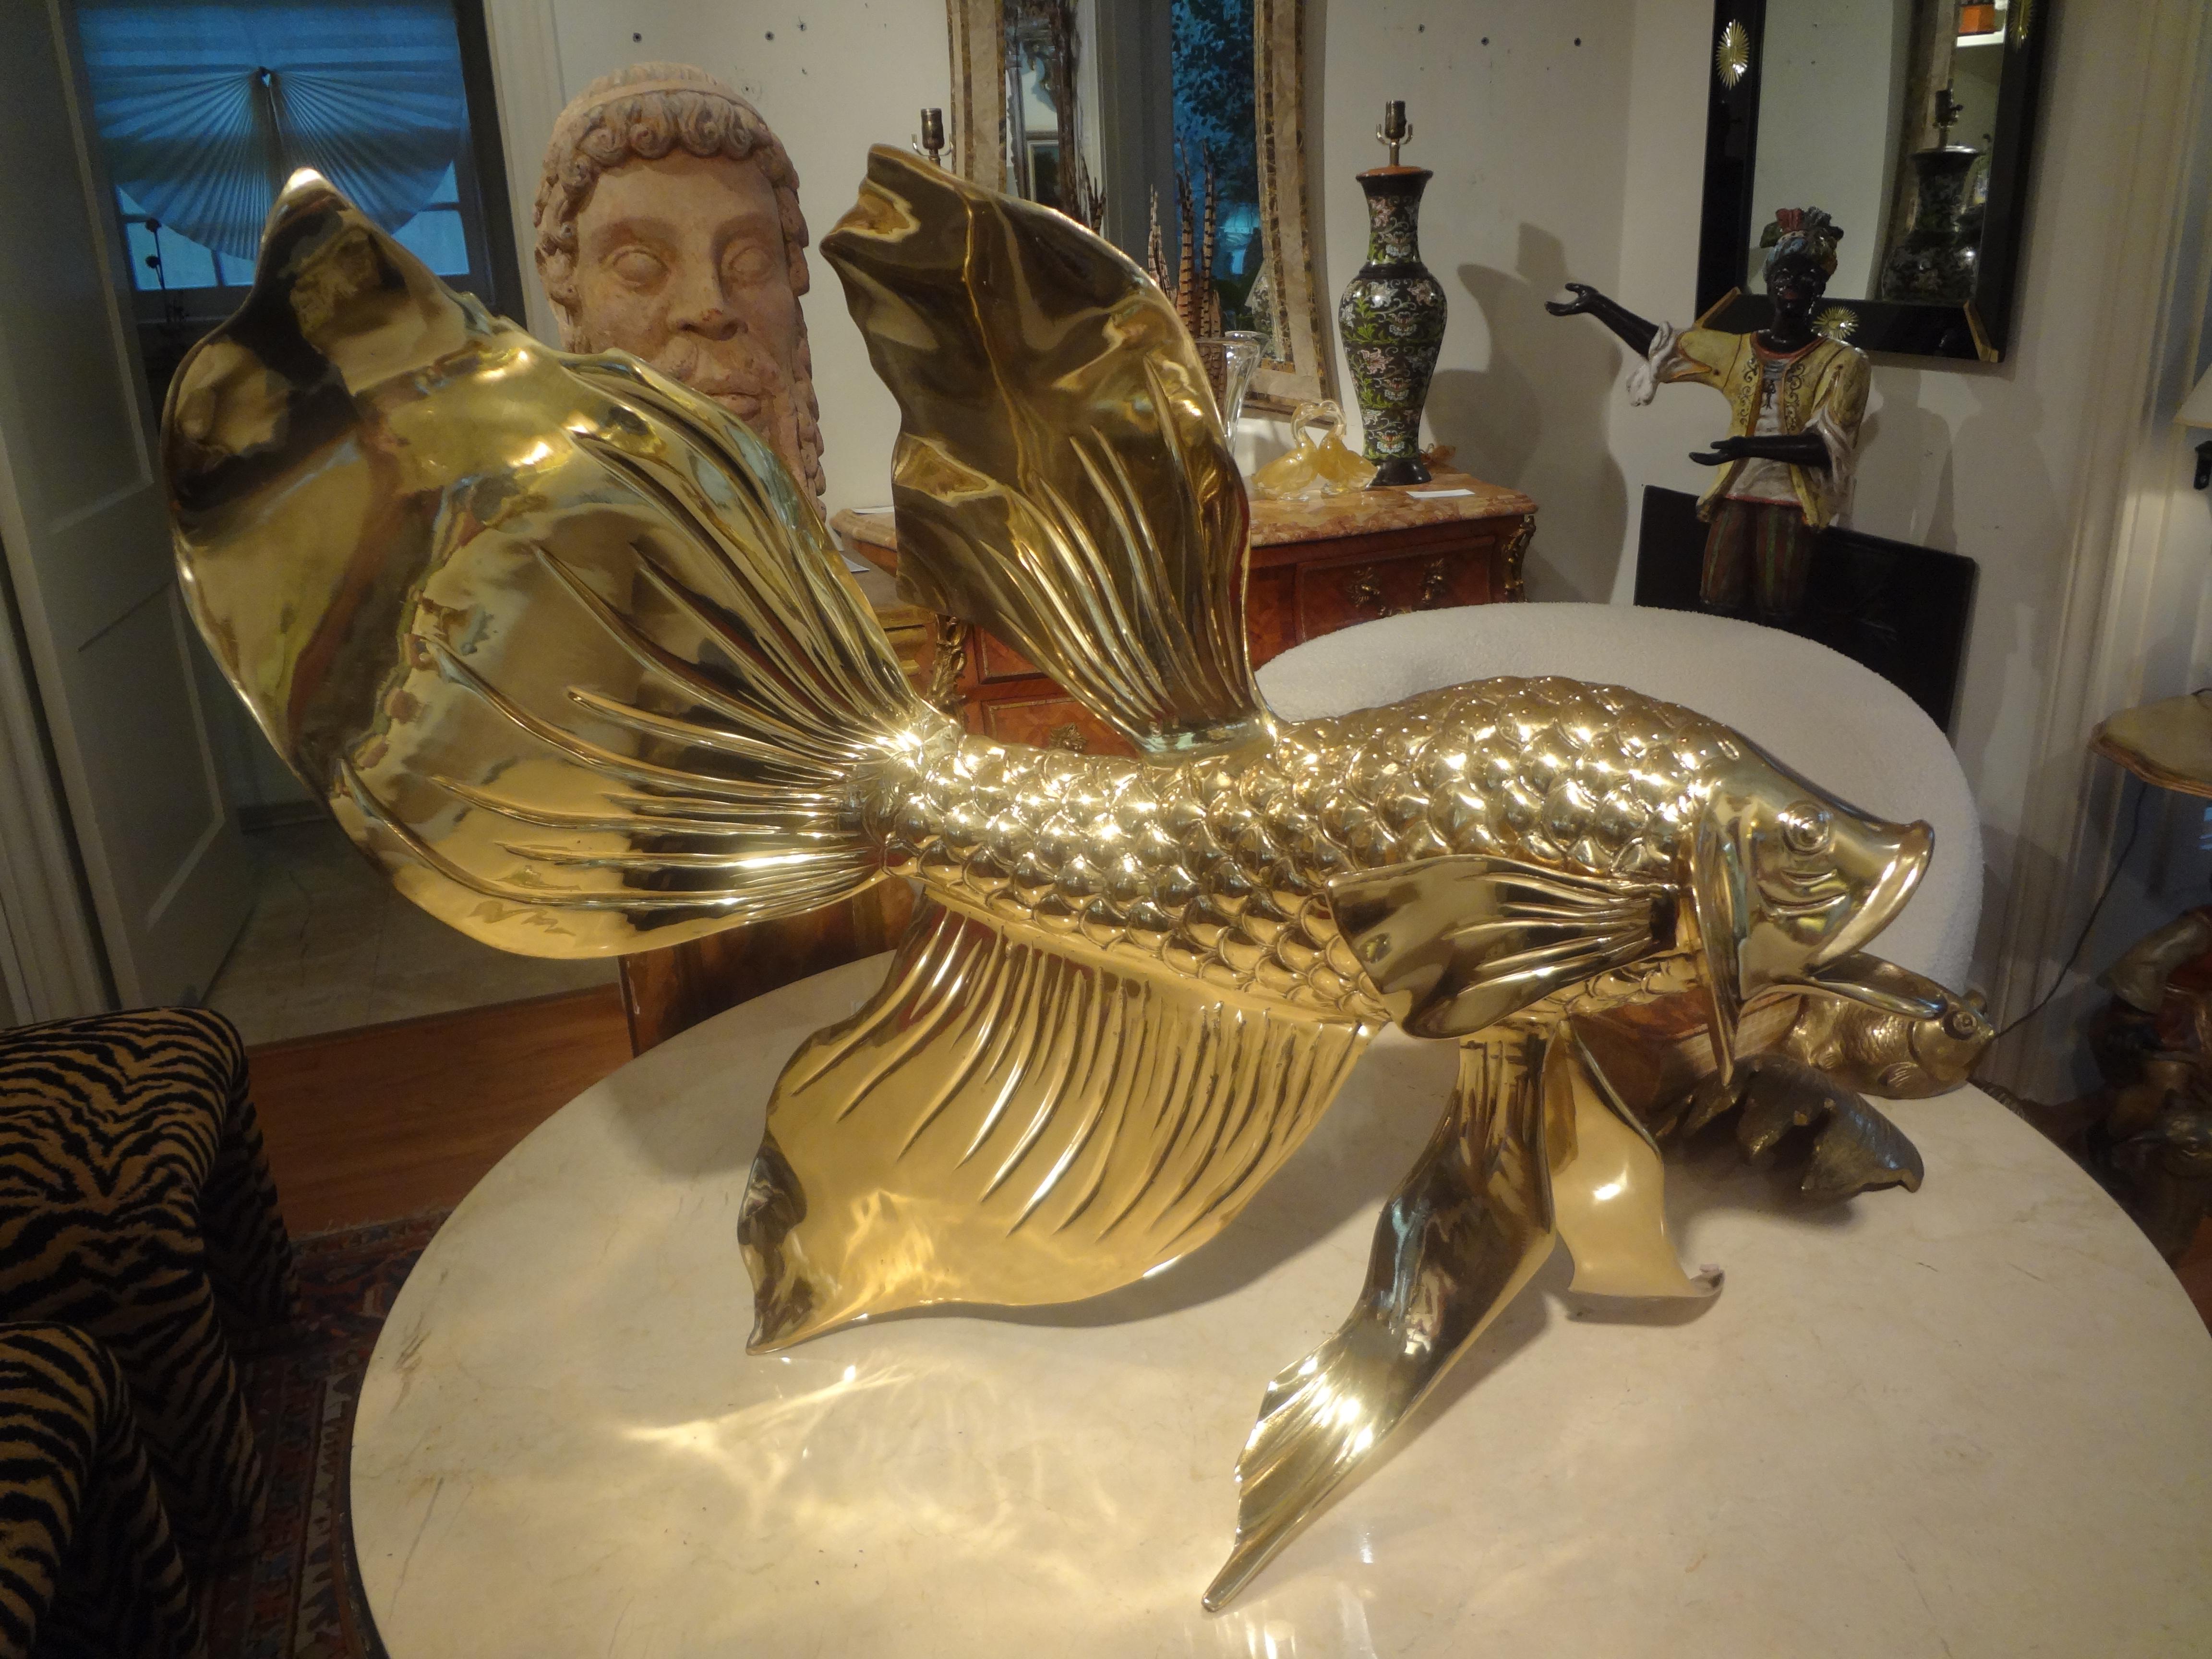 Monumentale italienische Fischskulptur aus Messing. Diese herrliche skulpturale gut detaillierte Fischskulptur ist schwer und vor kurzem professionell poliert. 
Die perfekte Skulptur für einen Couchtisch, Esstisch oder Konsolentisch.